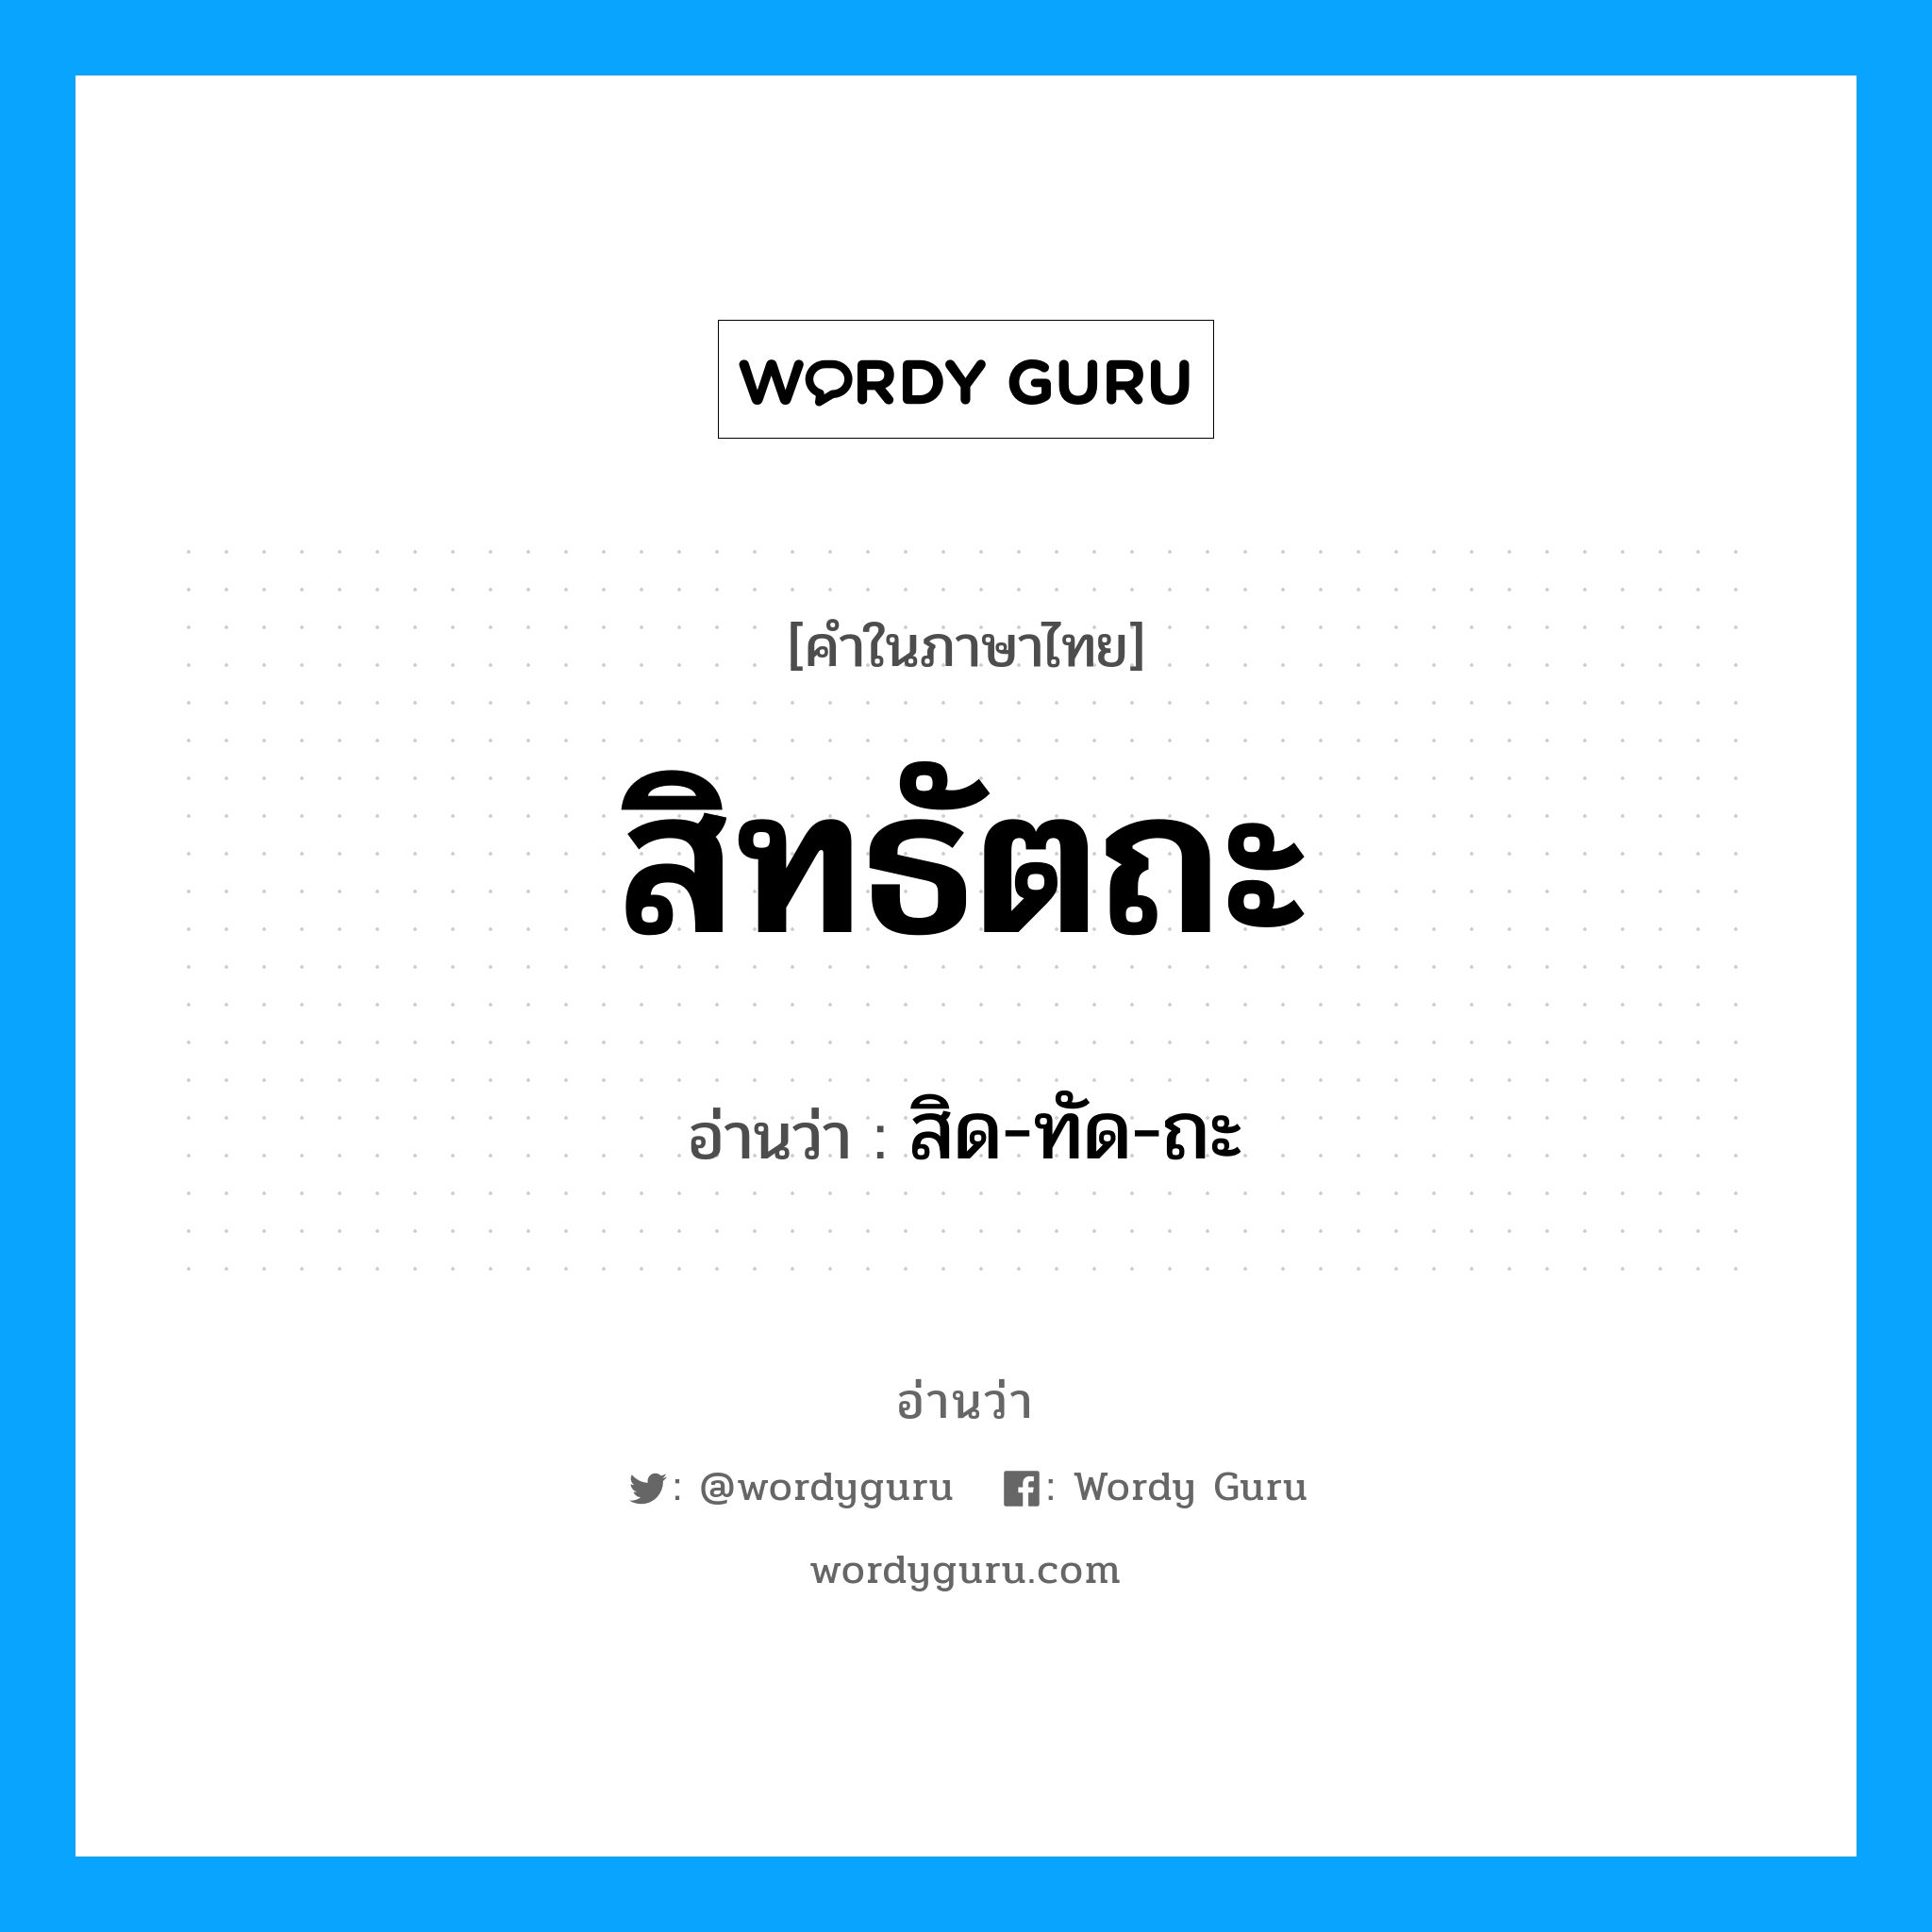 สิด-ทัด-ถะ เป็นคำอ่านของคำไหน?, คำในภาษาไทย สิด-ทัด-ถะ อ่านว่า สิทธัตถะ